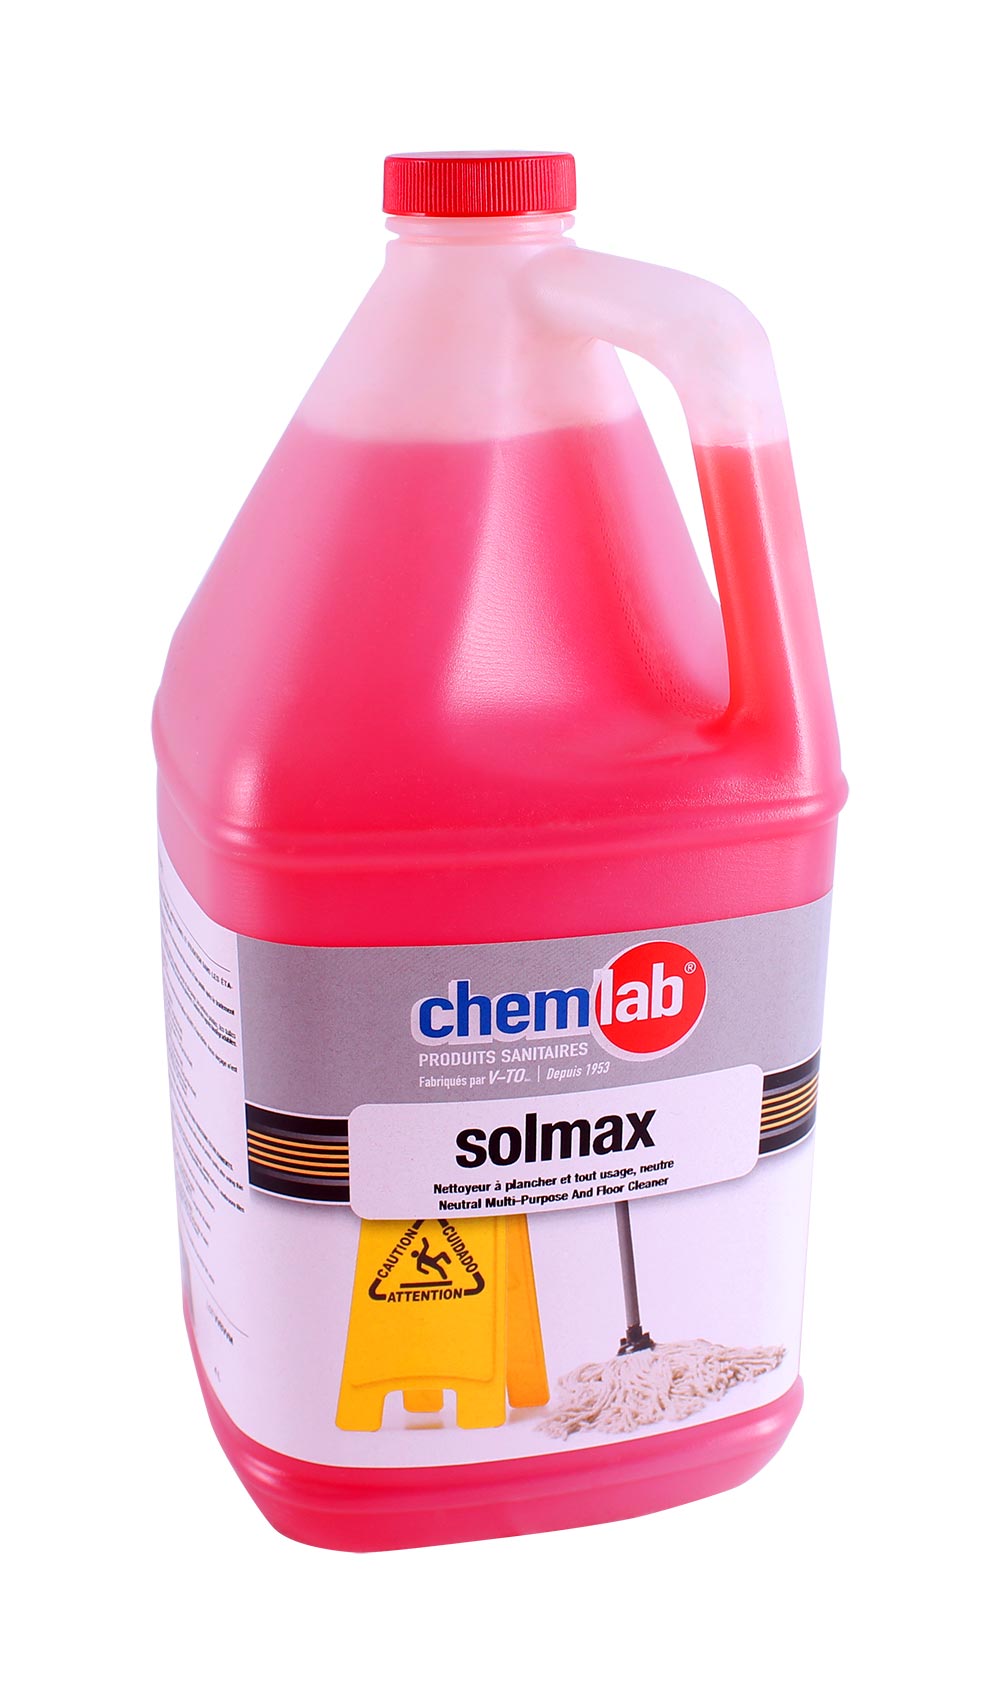 Solmax – Nettoyant à plancher tout usage neutre